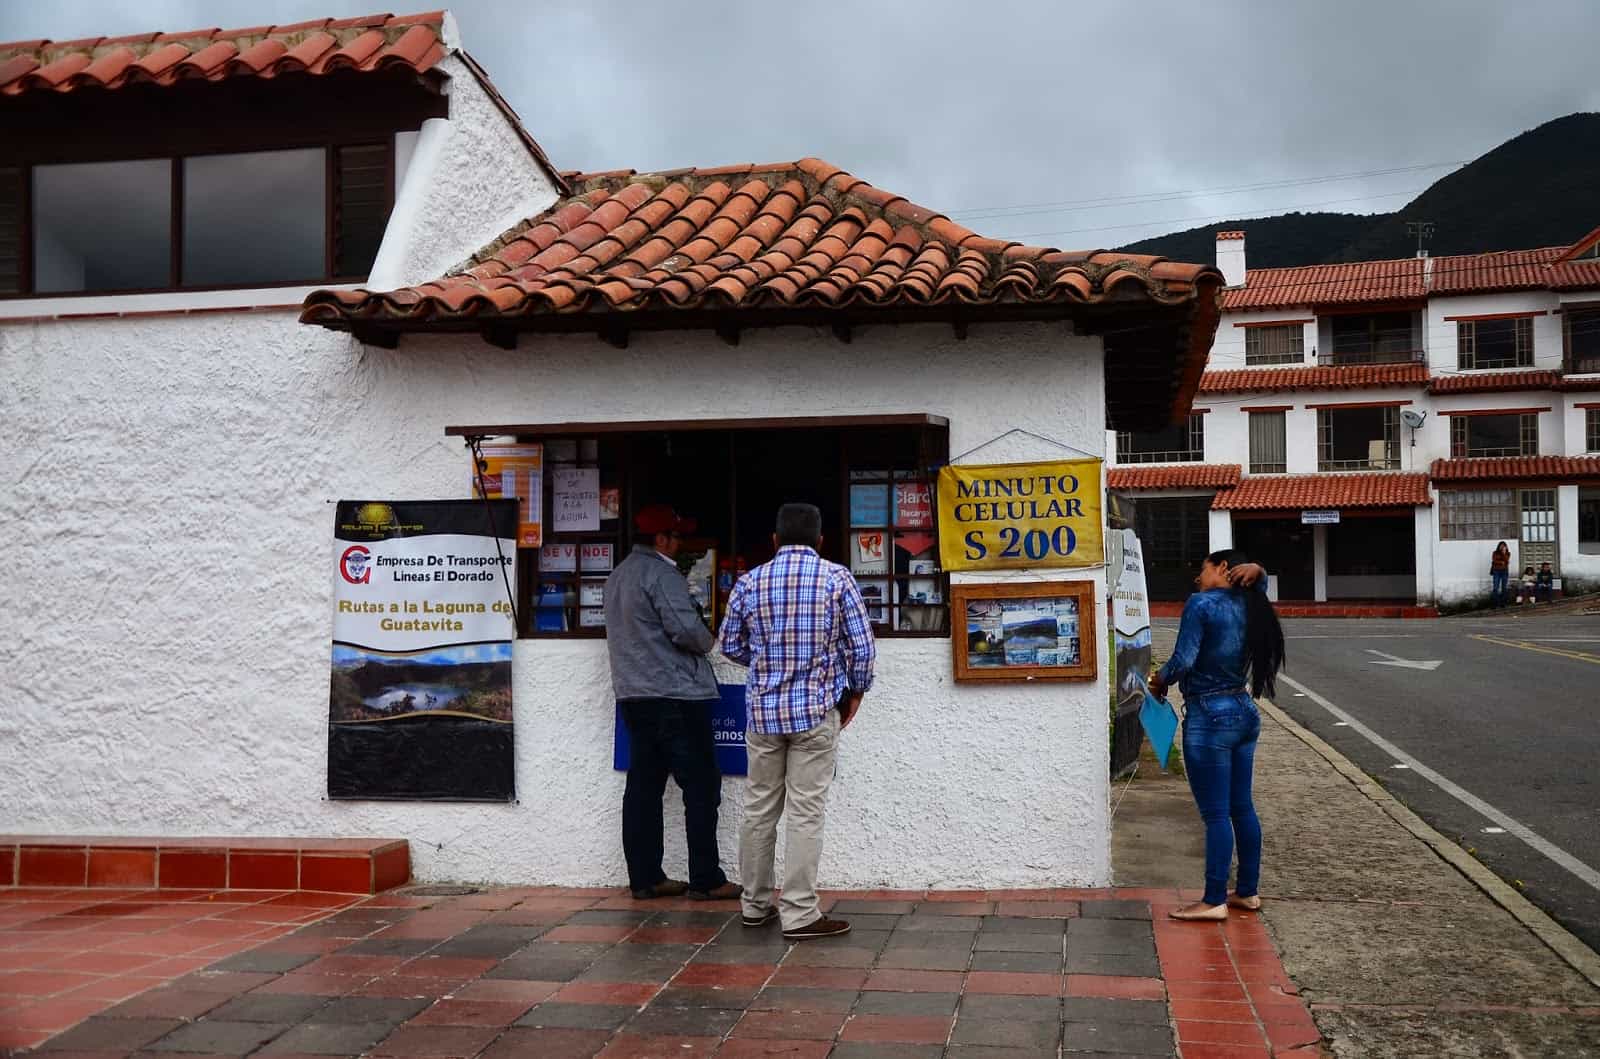 Lineas El Dorado office in Guatavita, Cundinamarca, Colombia